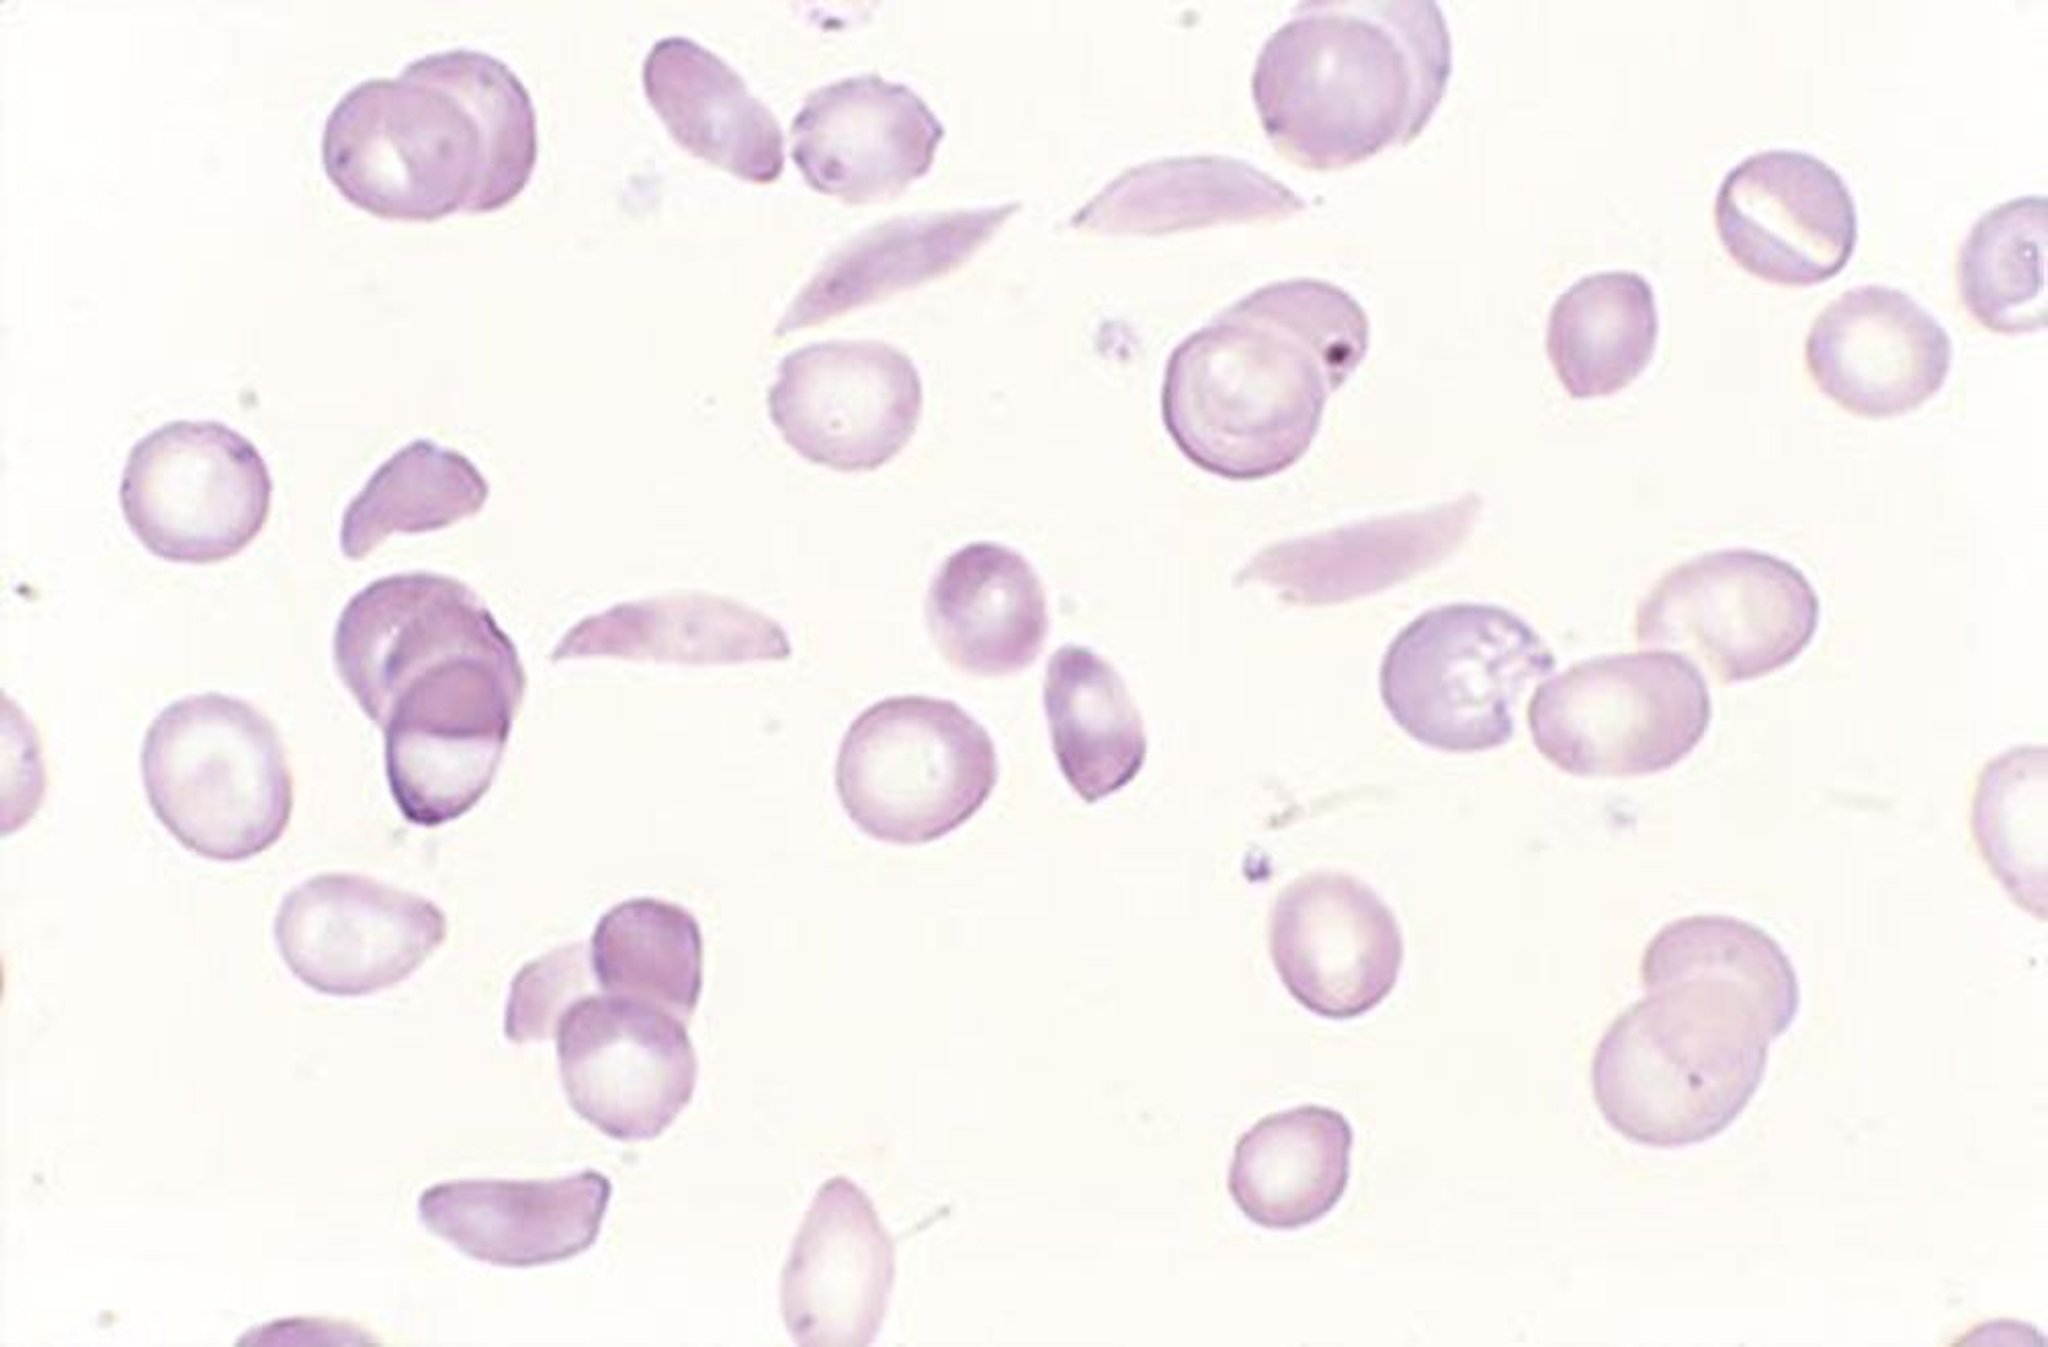 Cellule falciformi